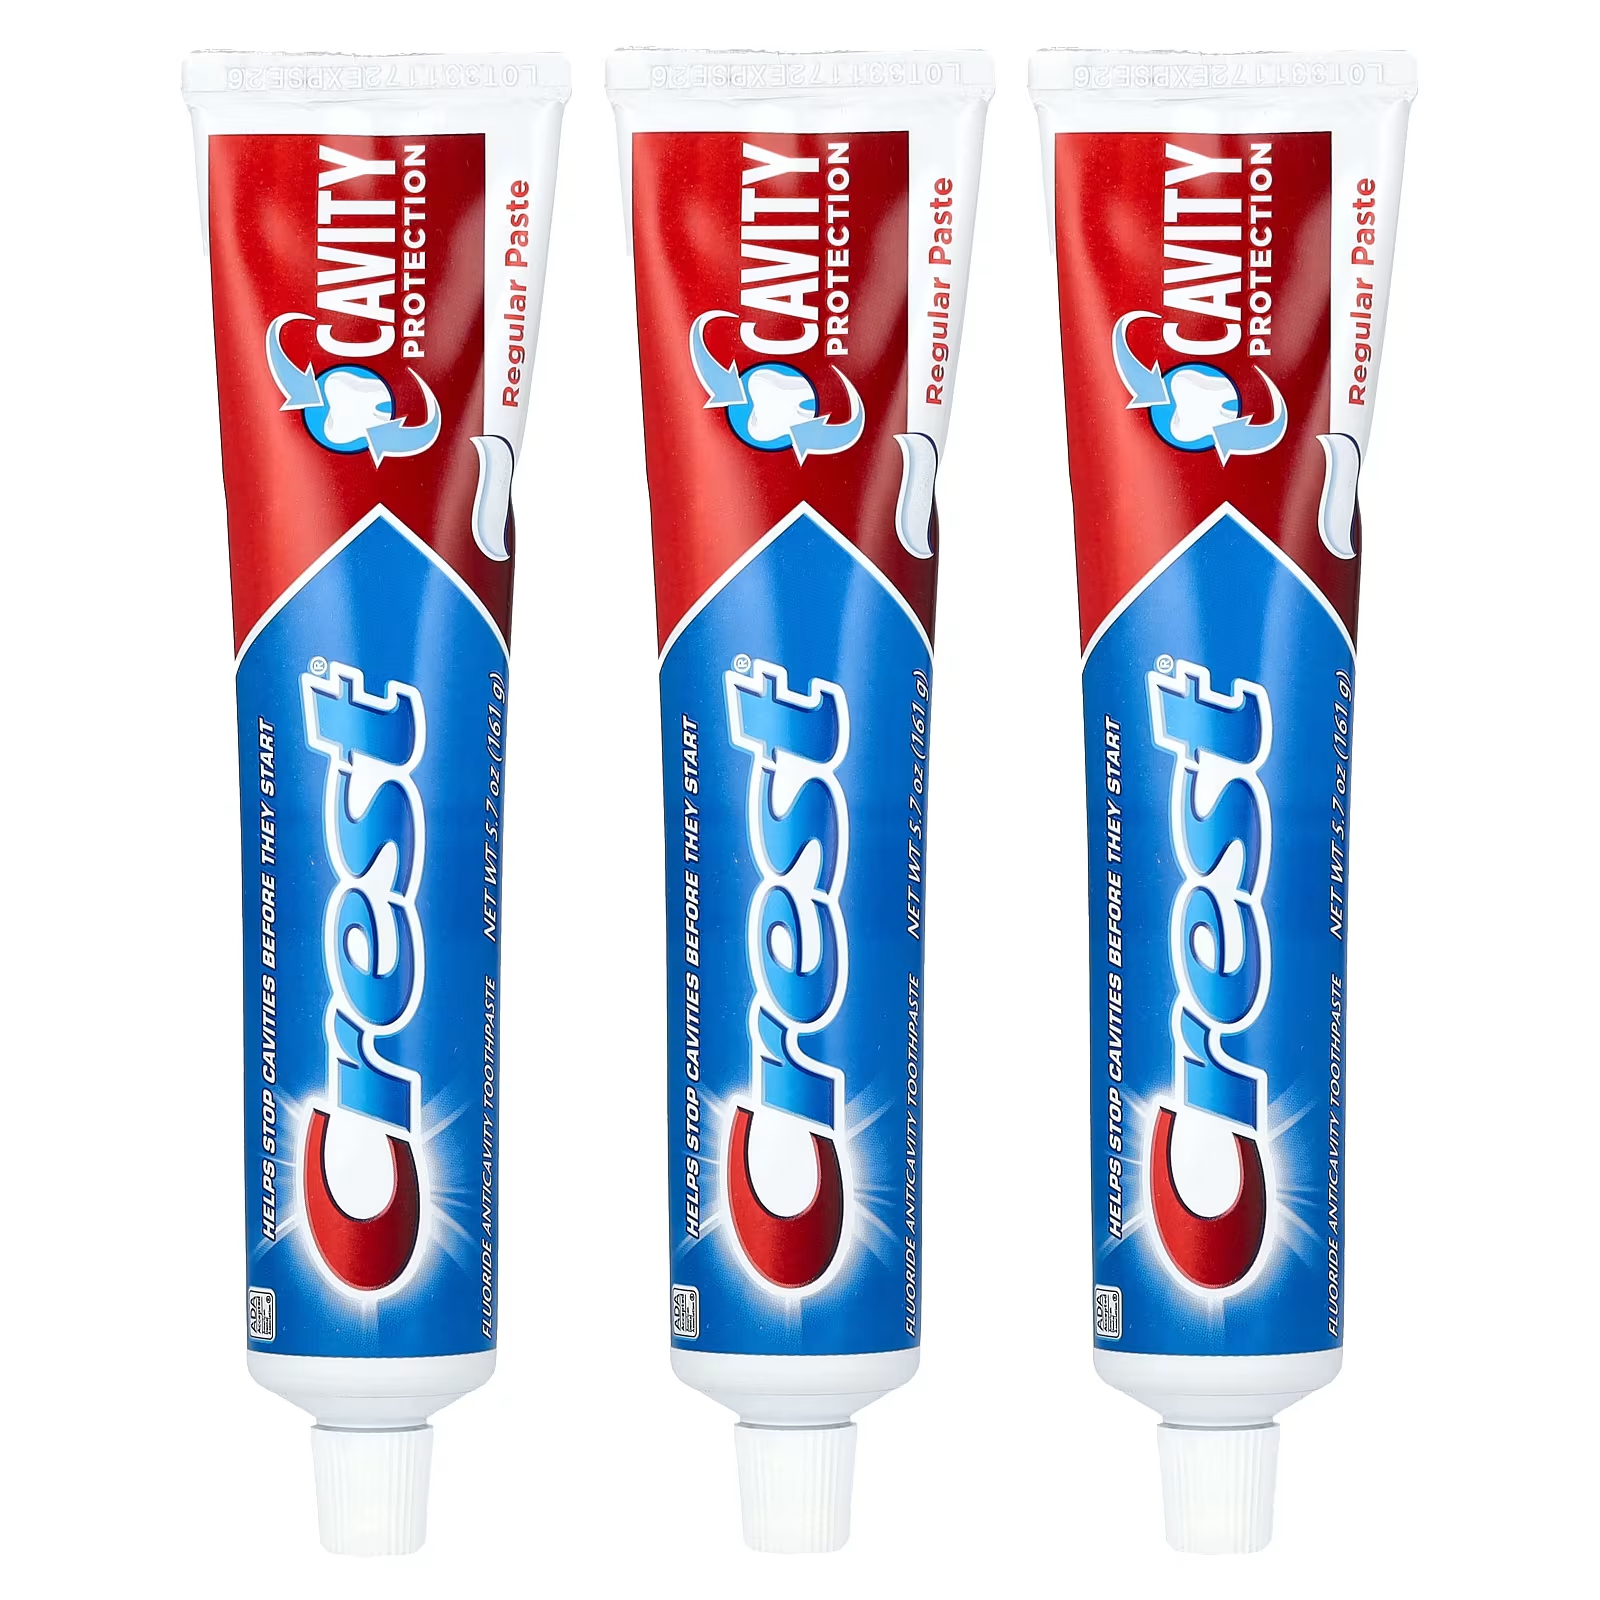 Зубная паста Crest Cavity Protection с фтором против кариеса, 3 упаковки по 161 г и другие фищев с б климов а г кариес зубов